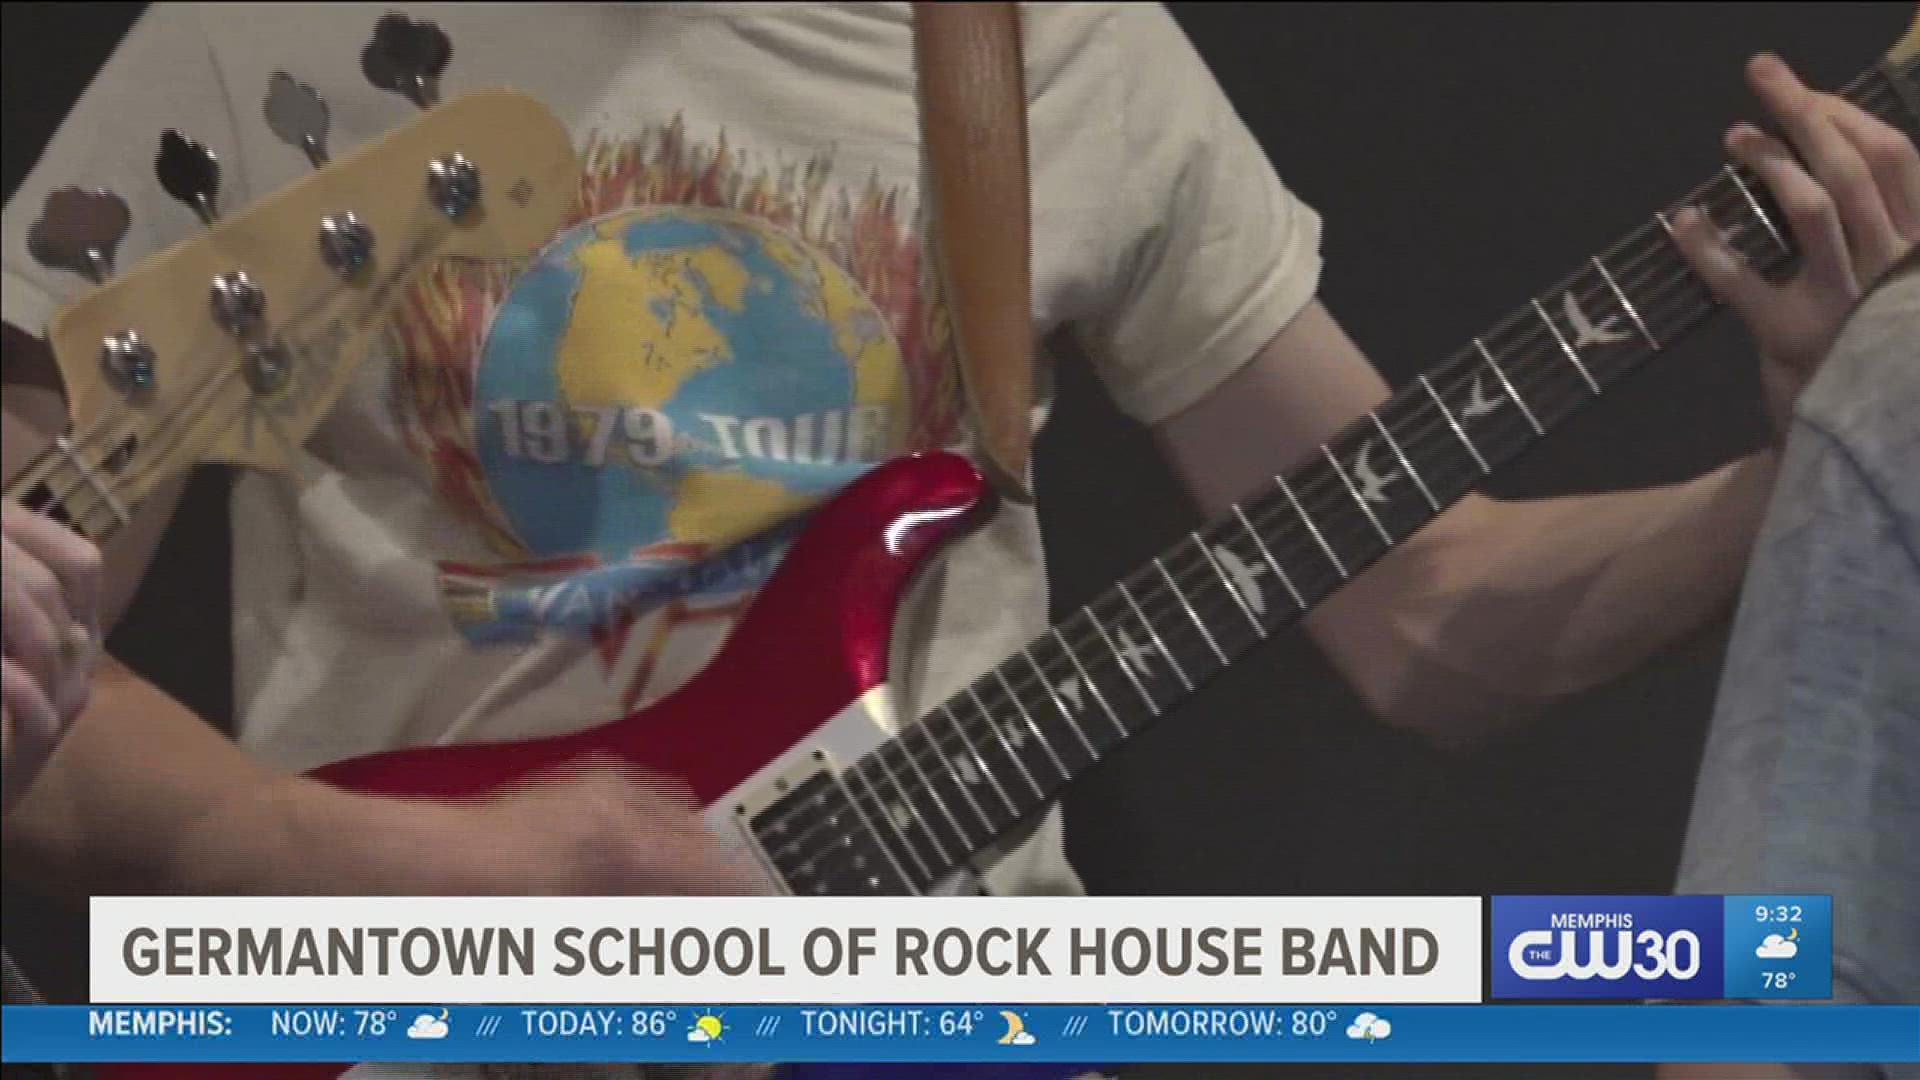 Watch School of Rock